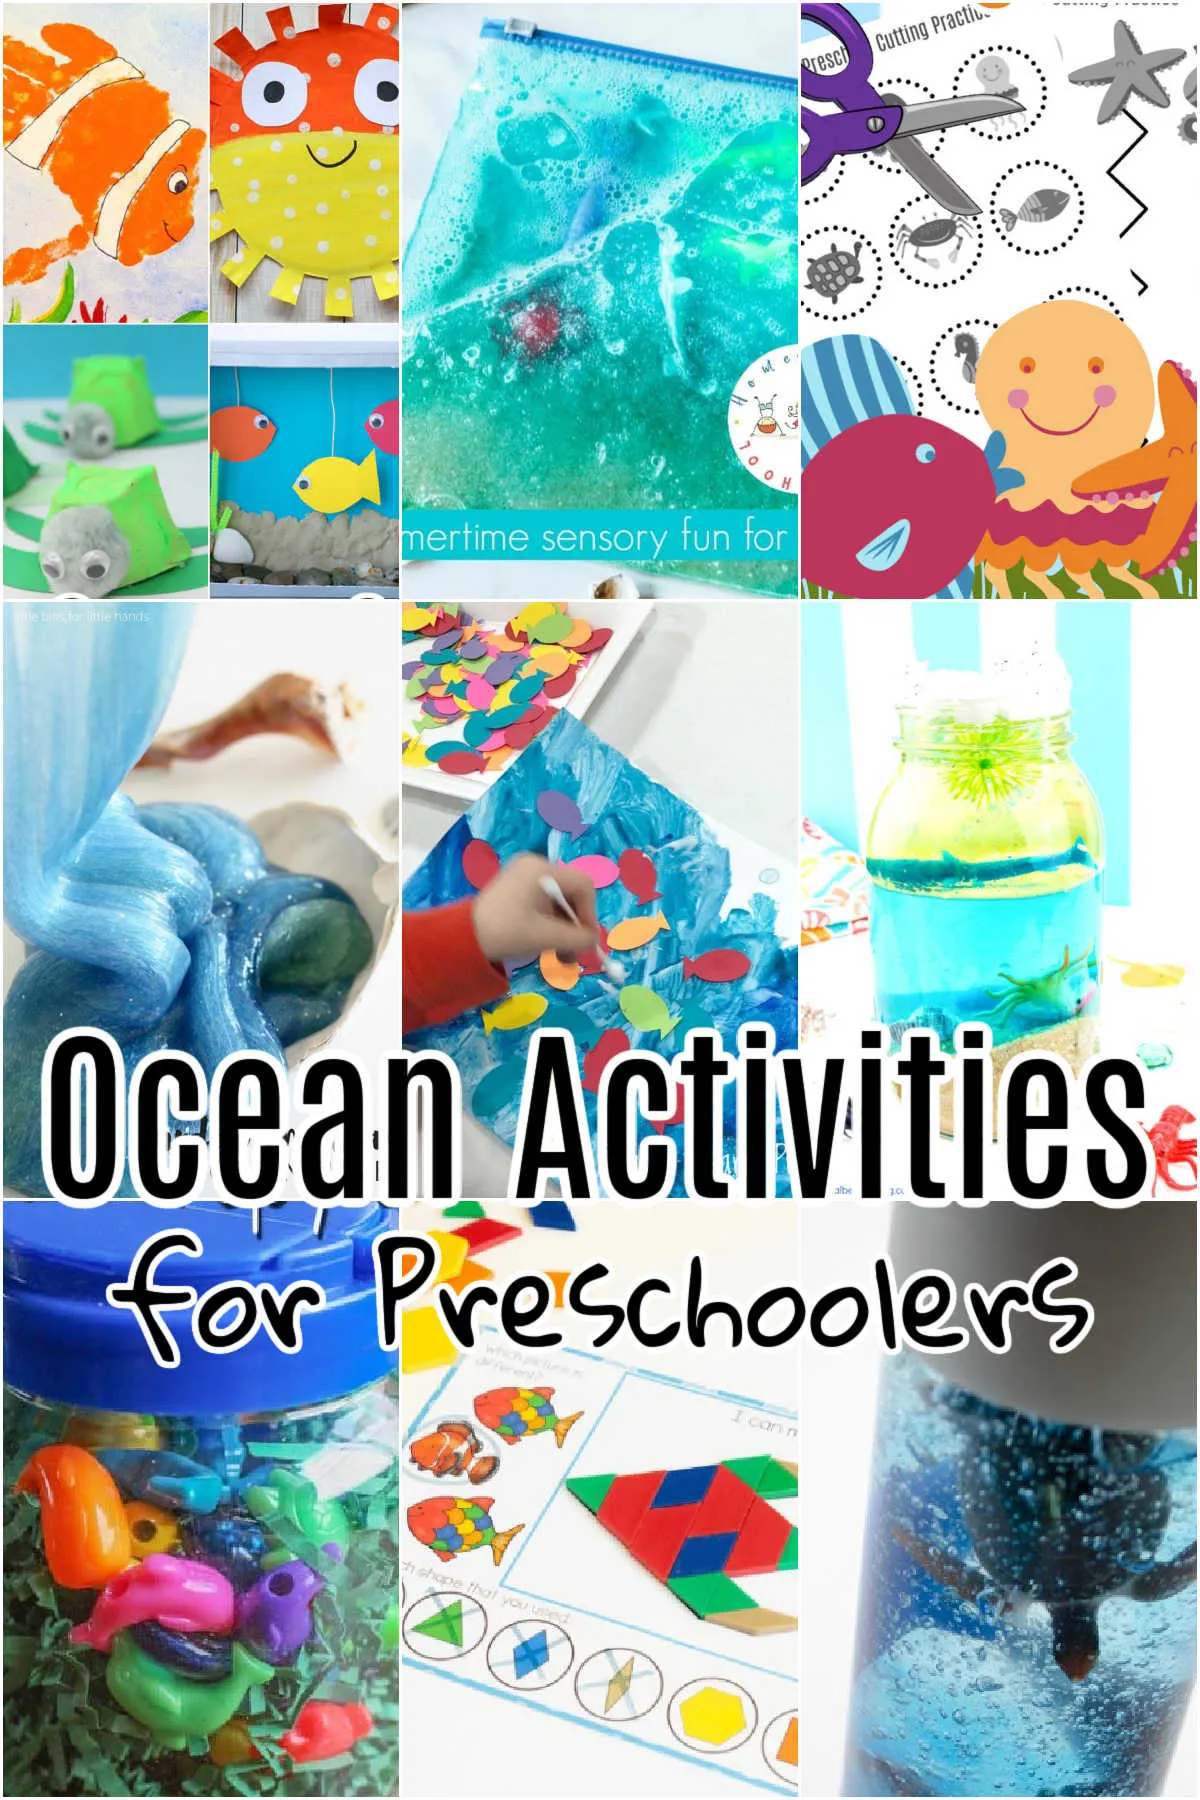 Collage of Ocean Activities for Preschoolers